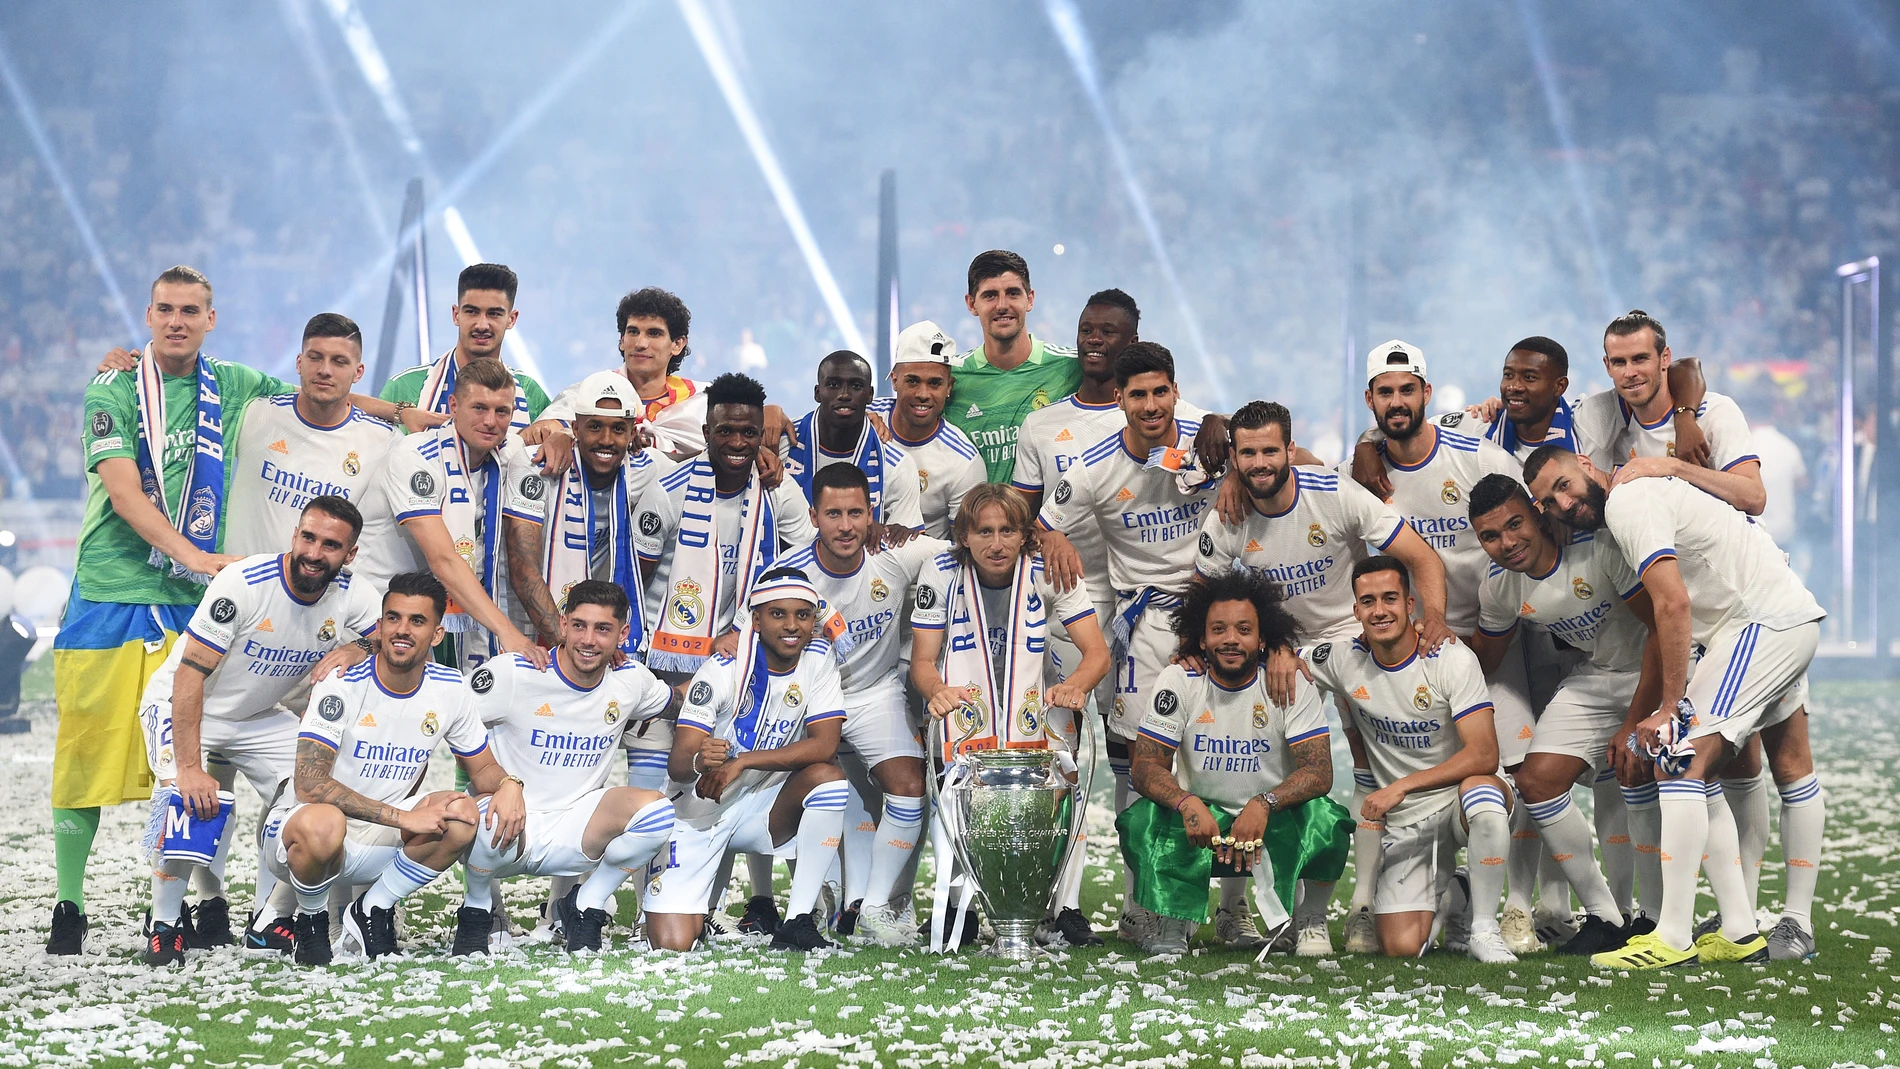 El Real Madrid, número 1 en la venta de camisetas en Europa